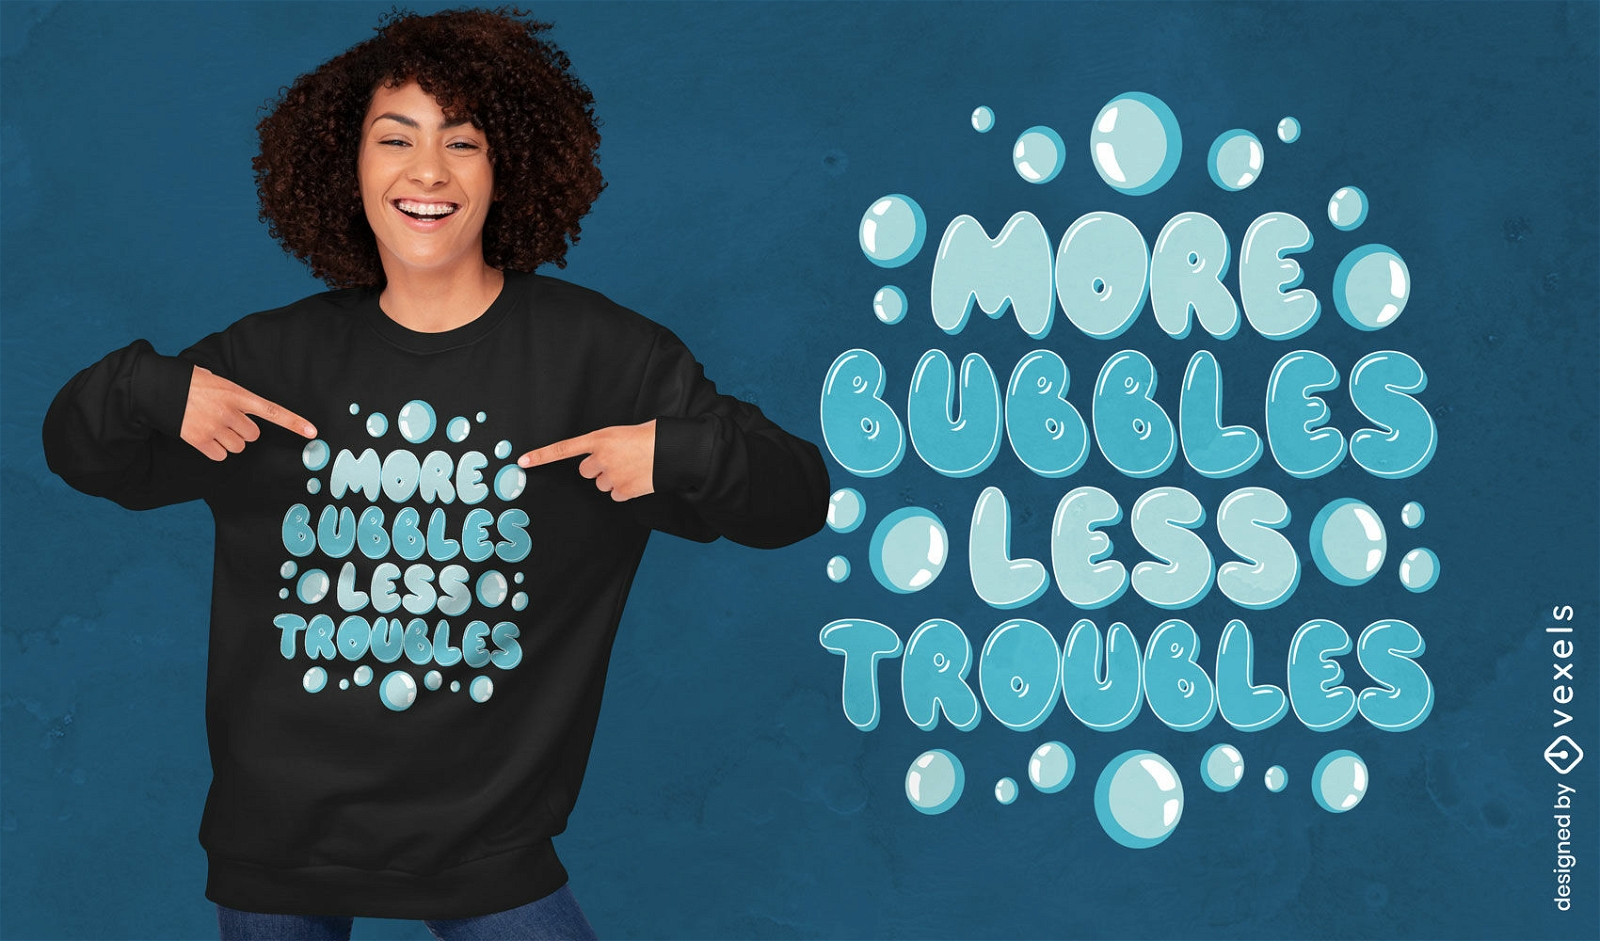 Bubbles motivational quote t-shirt design